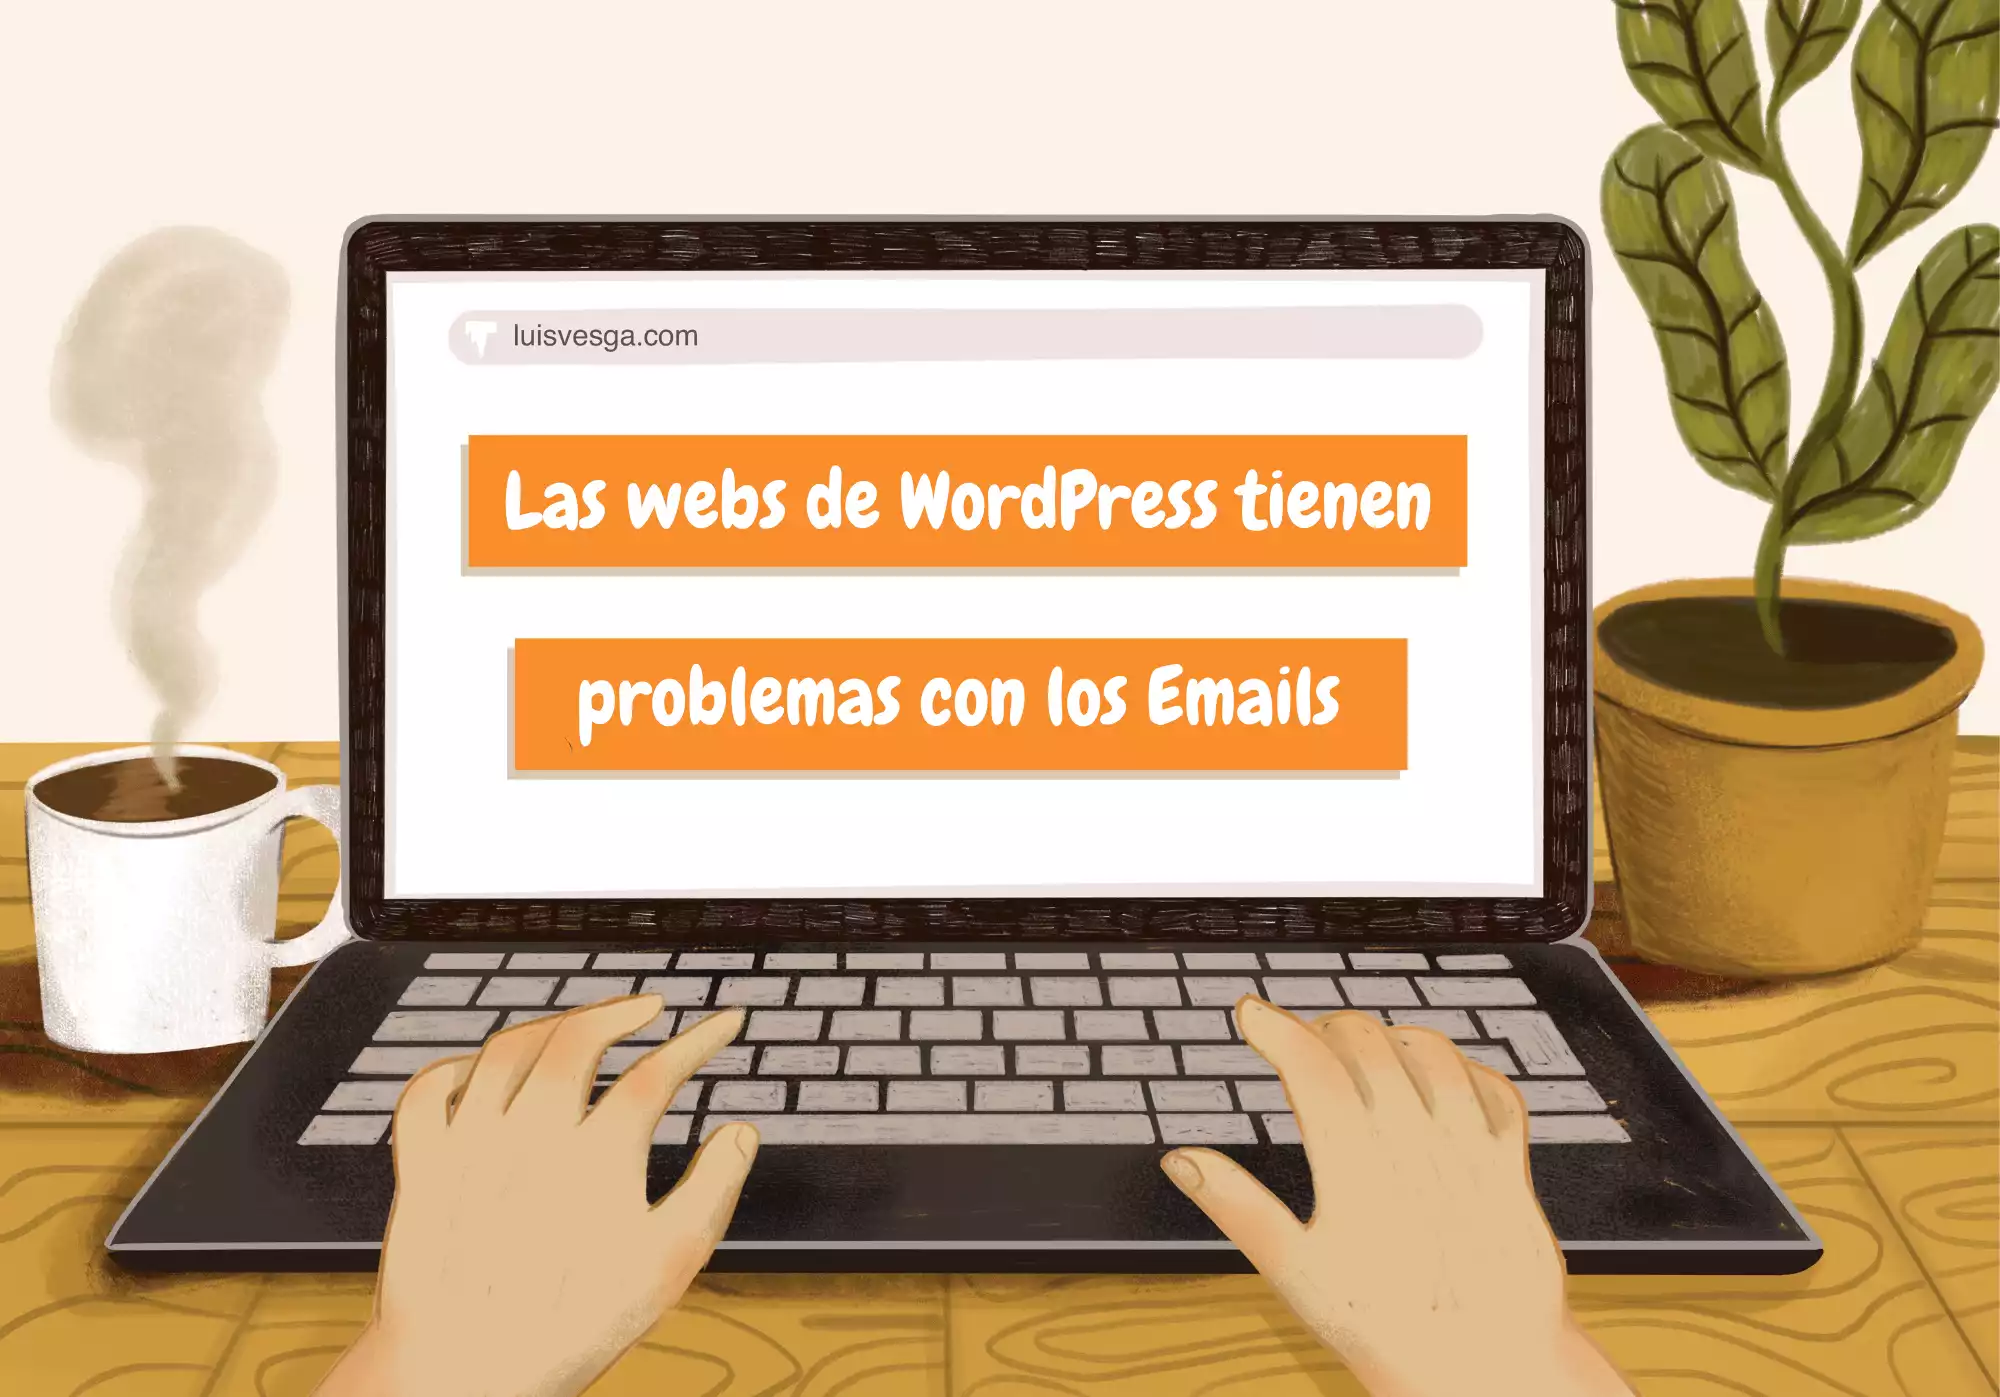 Las webs de WordPress tienen problemas con los Emails